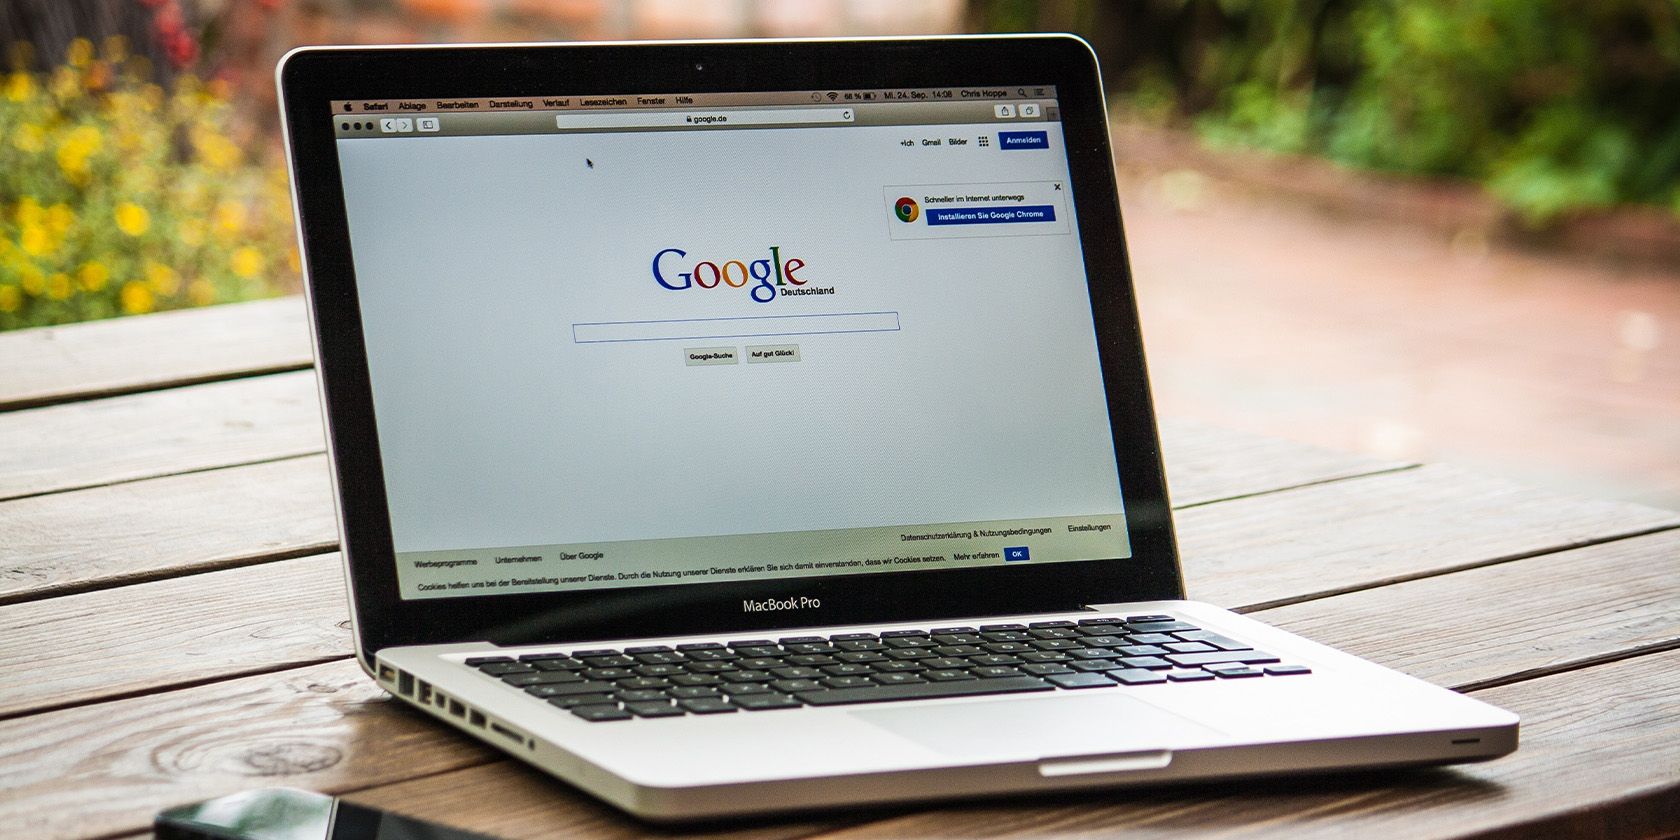 Laptop displaying Google search engine